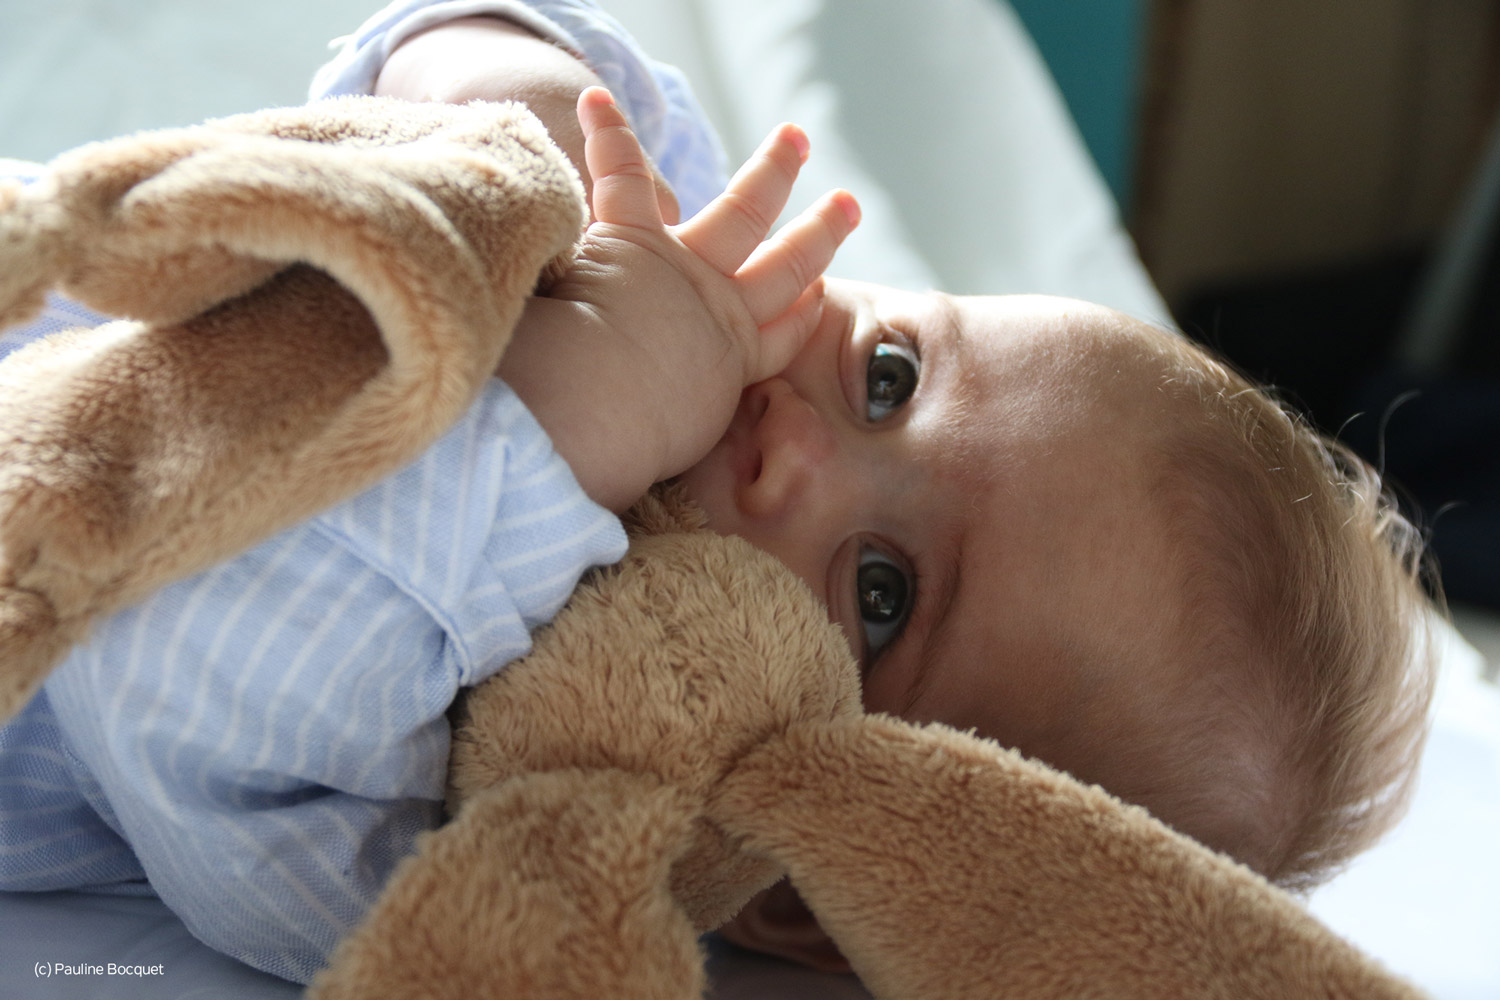 Bébé a 6 mois : son sommeil, son alimentation, les soins dont il a